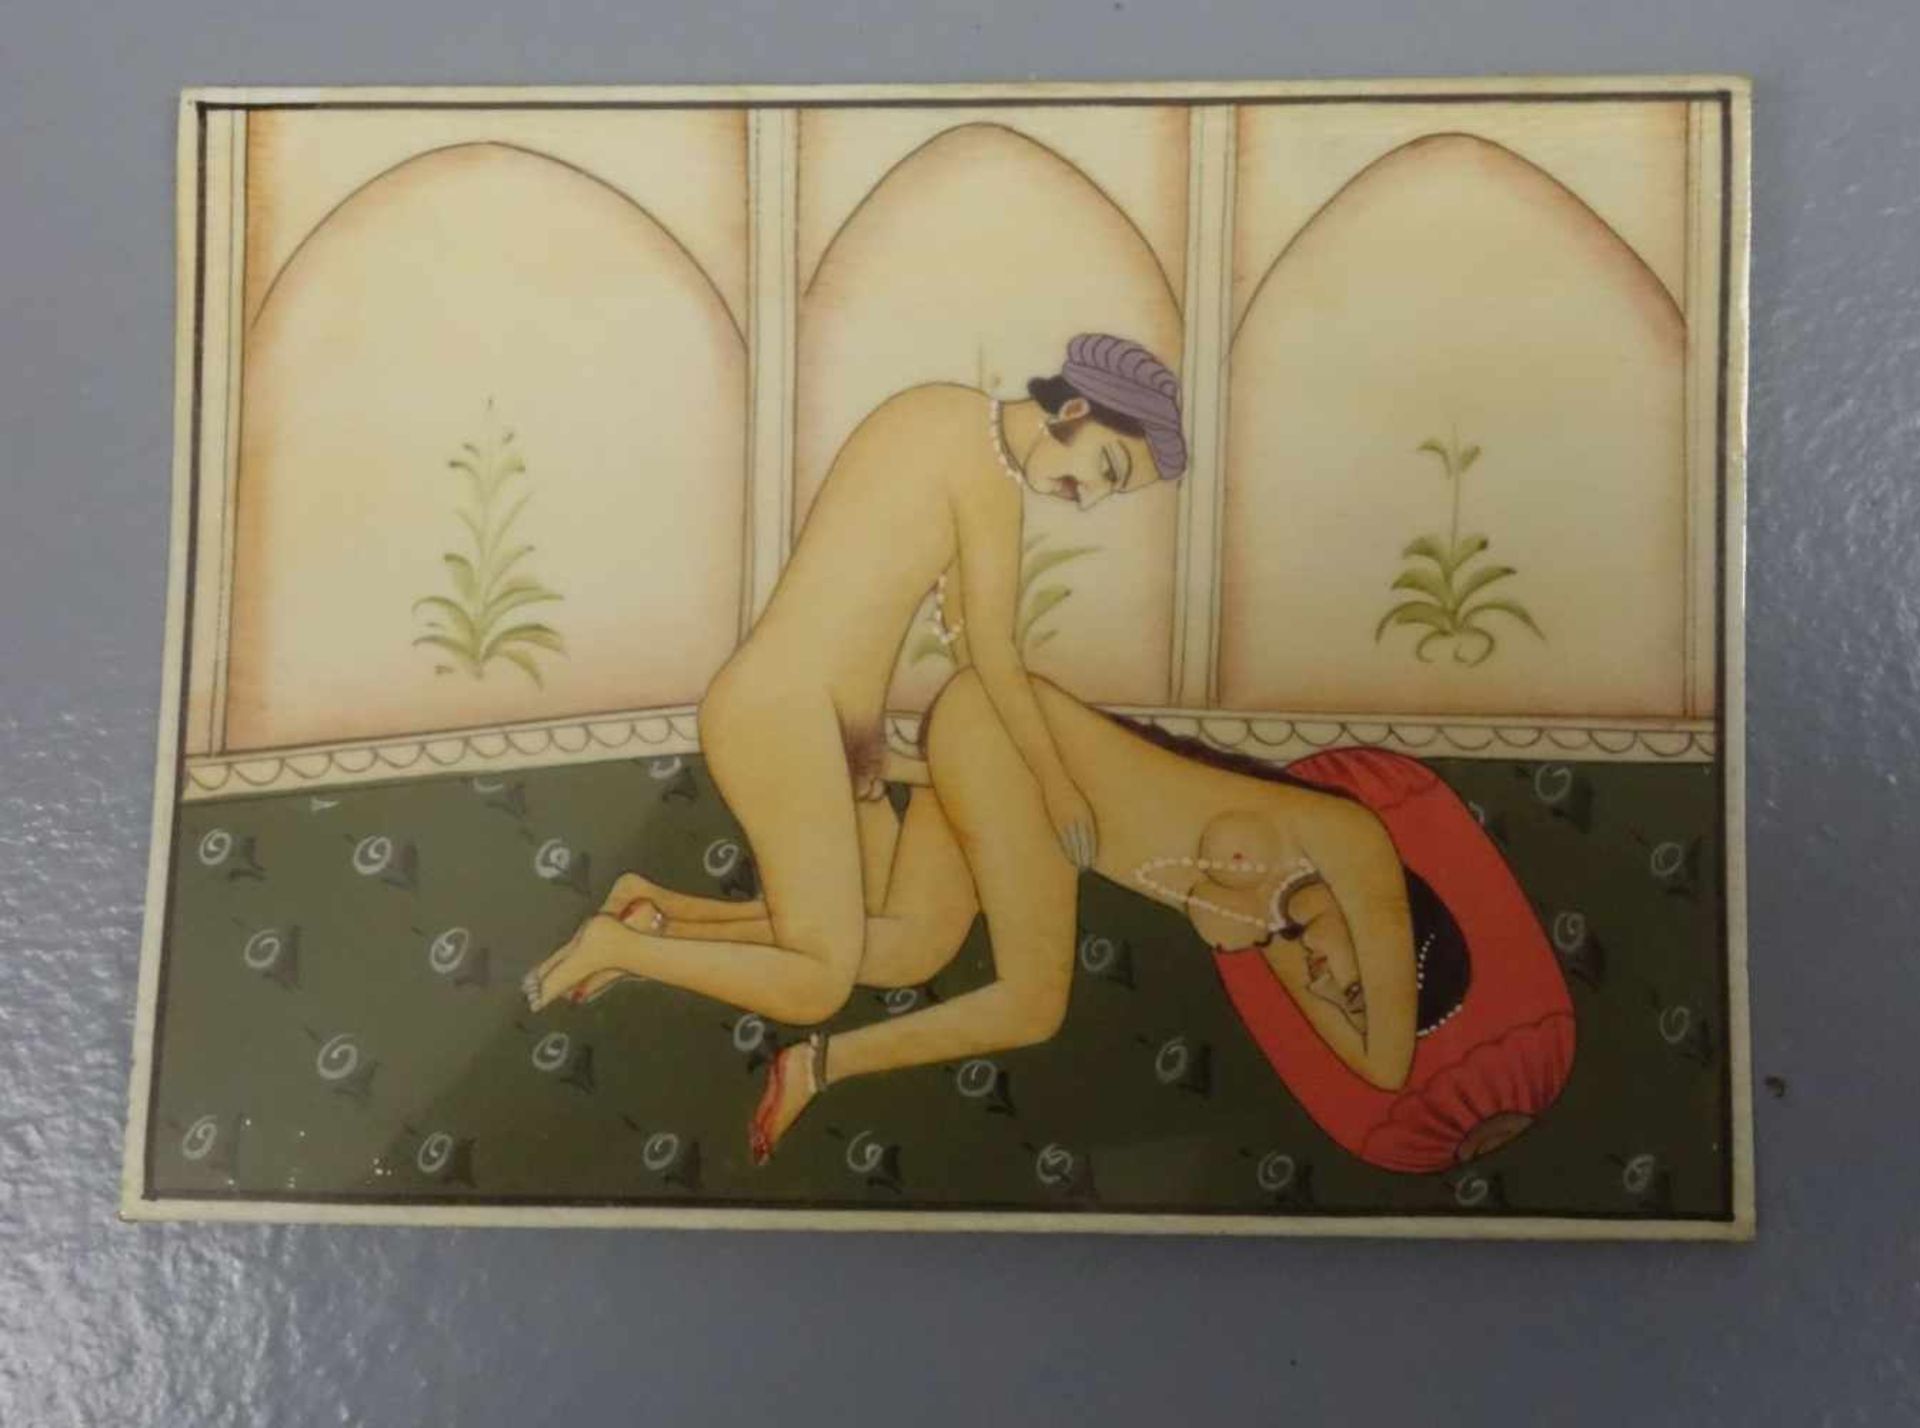 7 EROTISCHE MINIATUREN ZUM KAMASUTRA, der indischen Traditionslehre über Erotik. Tempera auf - Bild 3 aus 10